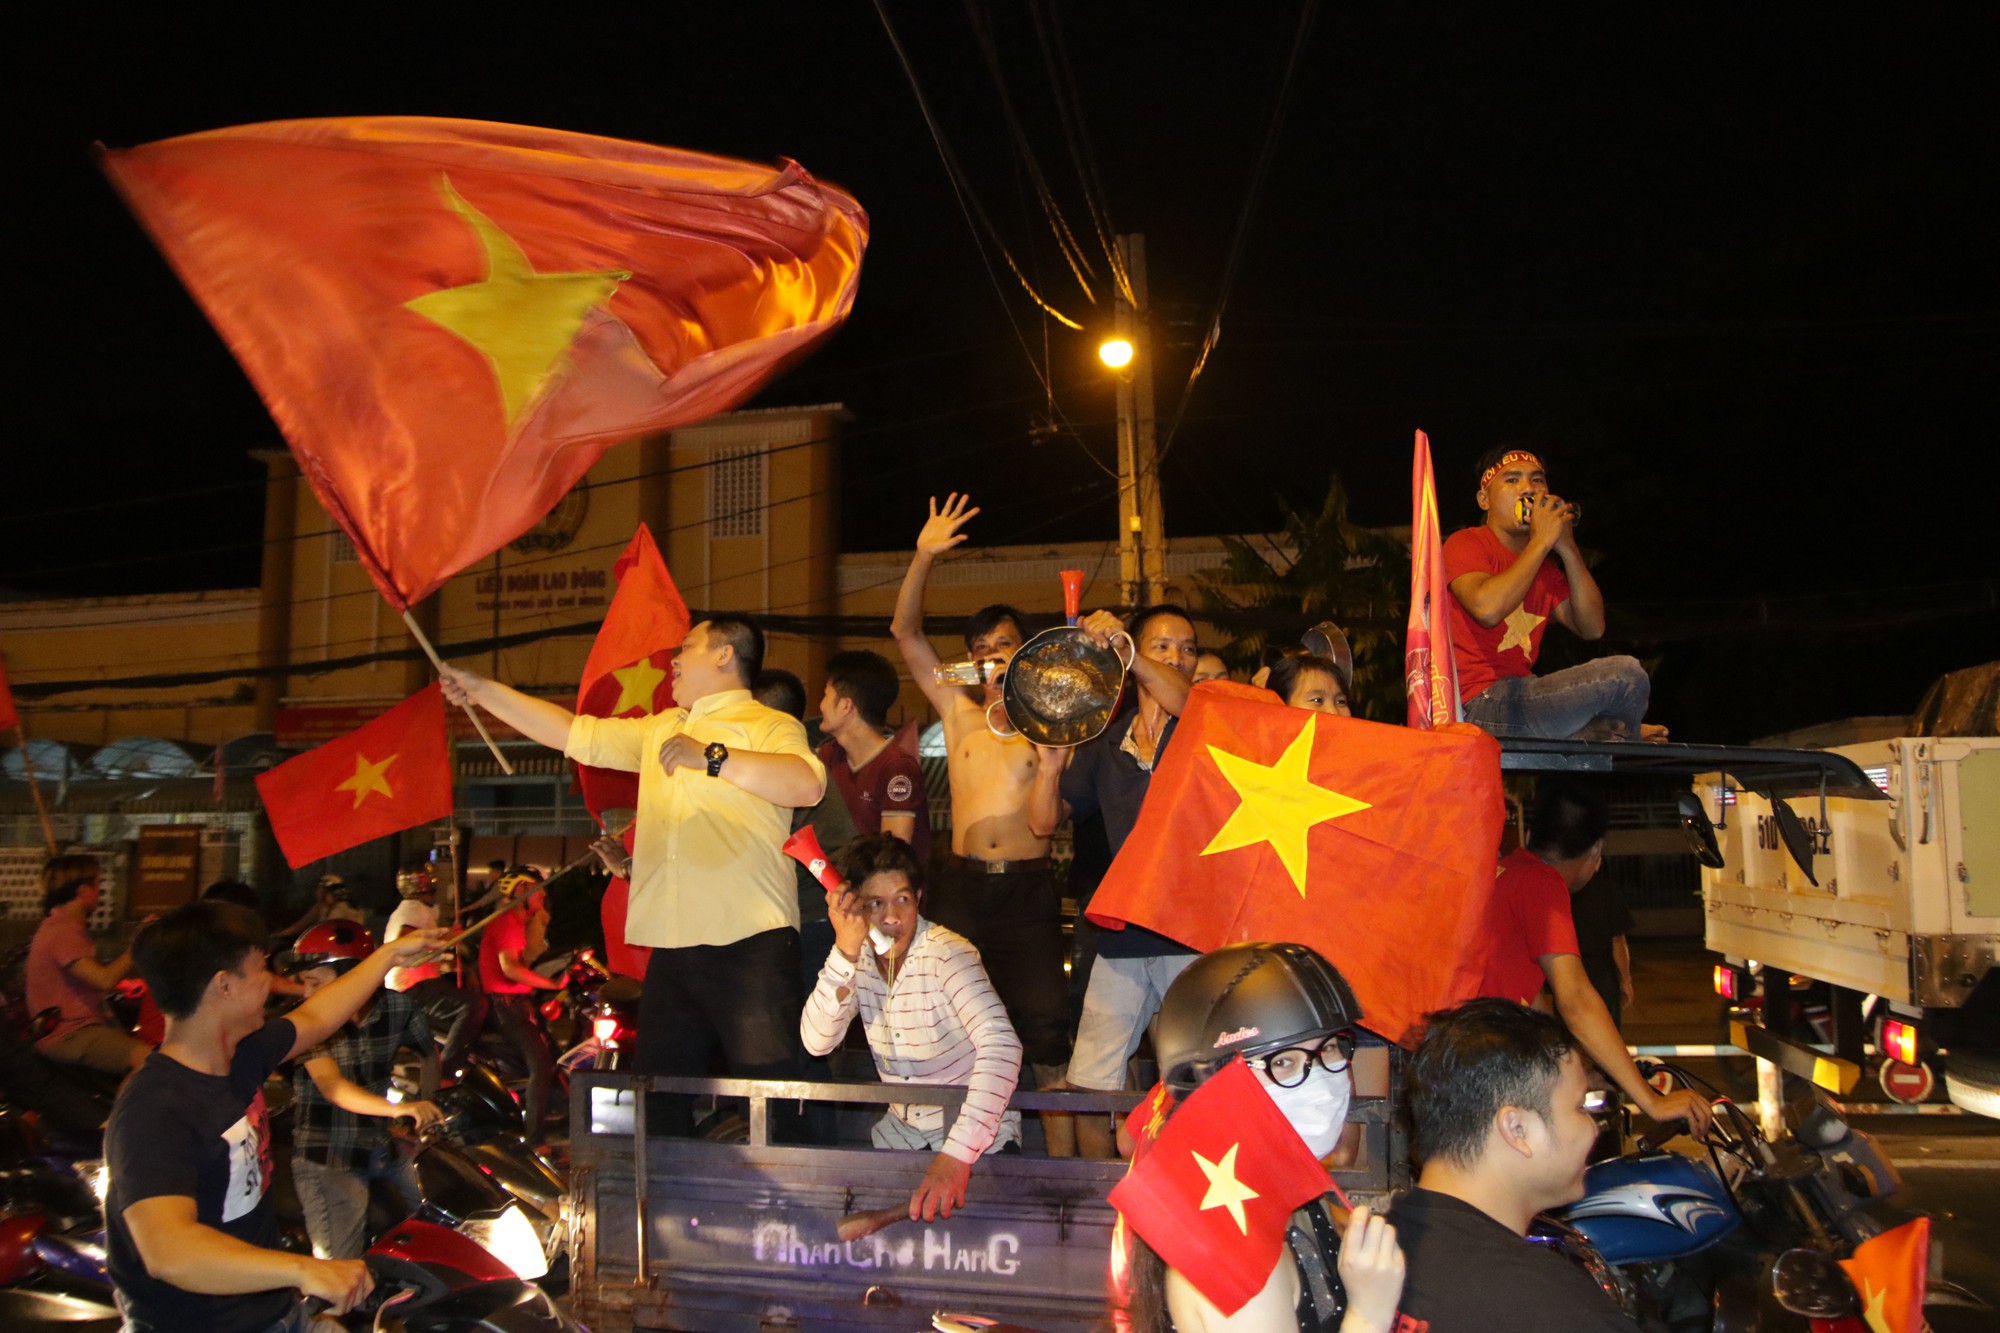 U23 Việt Nam chiến thắng: Khi Đội tuyển bóng đá U23 Việt Nam đăng quang tại giải U23 Châu Á, cả nước đã phát sốt với niềm vui rực rỡ. Với tinh thần chiến đấu quả cảm, những ngôi sao trẻ của Việt Nam đã ghi dấu ấn không thể xóa nhòa trong lịch sử bóng đá châu Á. Cùng đón xem những khoảnh khắc đẹp mắt của trận đấu và cảm nhận sức mạnh của tinh thần thể thao.